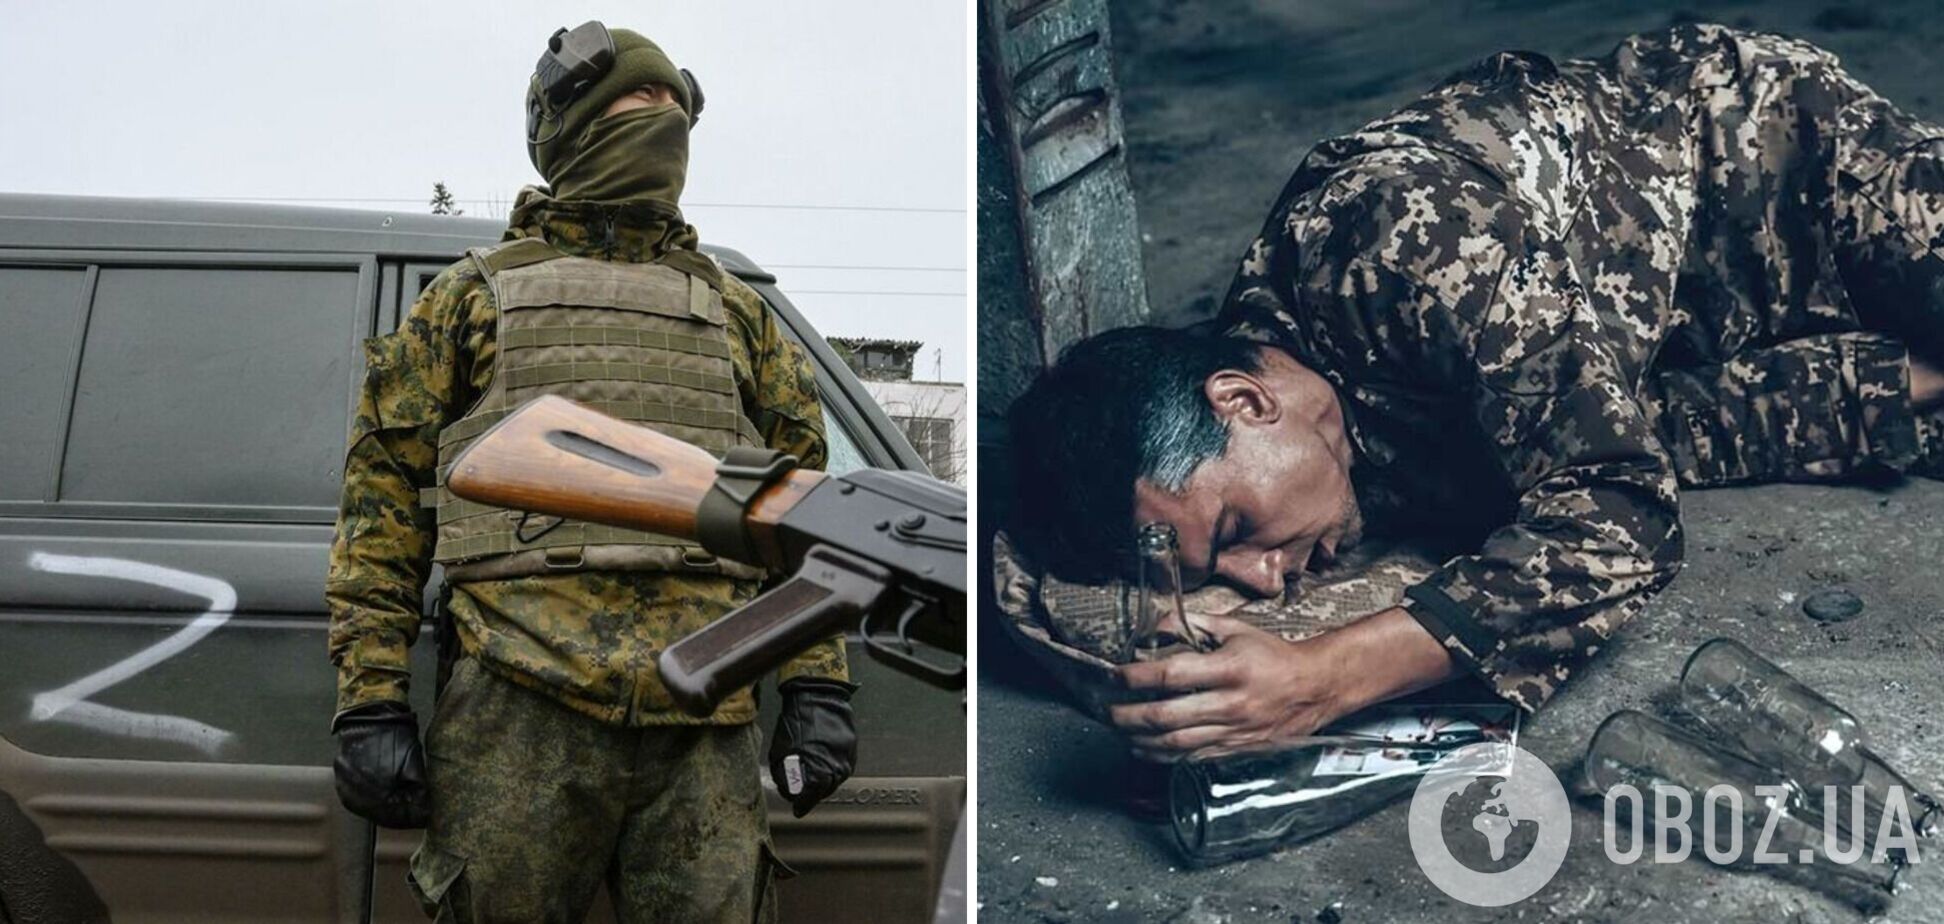 'Страшно умирать, денег не дают': оккупант пожаловался отцу на тяжелые будни войны против Украины и пьянство 'товарищей'